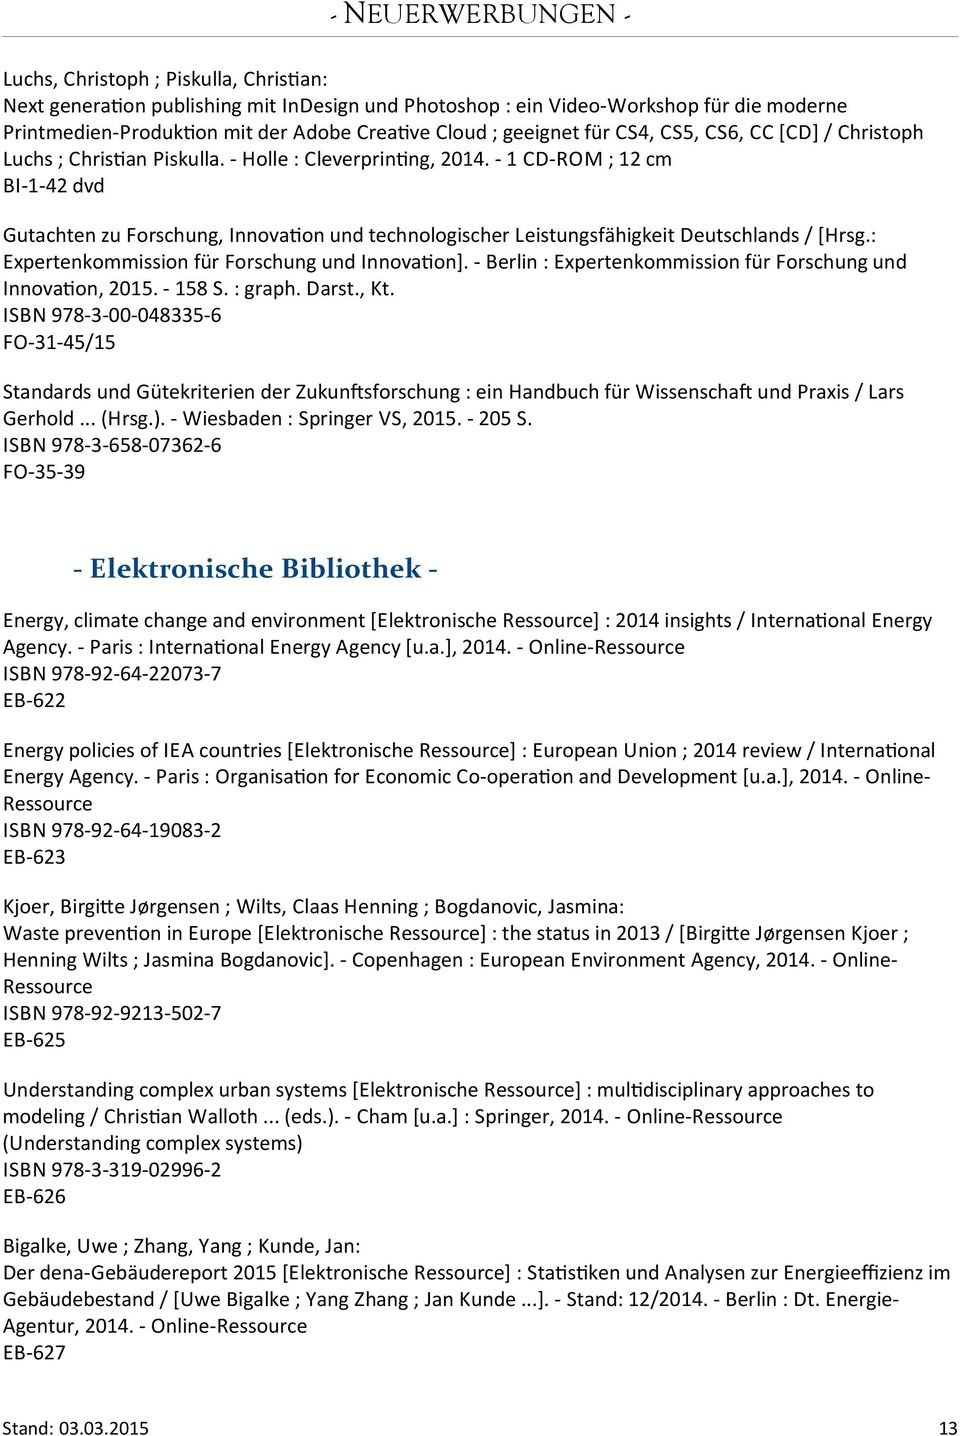 - 1 CD-ROM ; 12 cm BI-1-42 dvd Gutachten zu Forschung, Innovaton und technologischer Leistungsfähigkeit Deutschlands / [Hrsg.: Expertenkommission für Forschung und Innovaton].